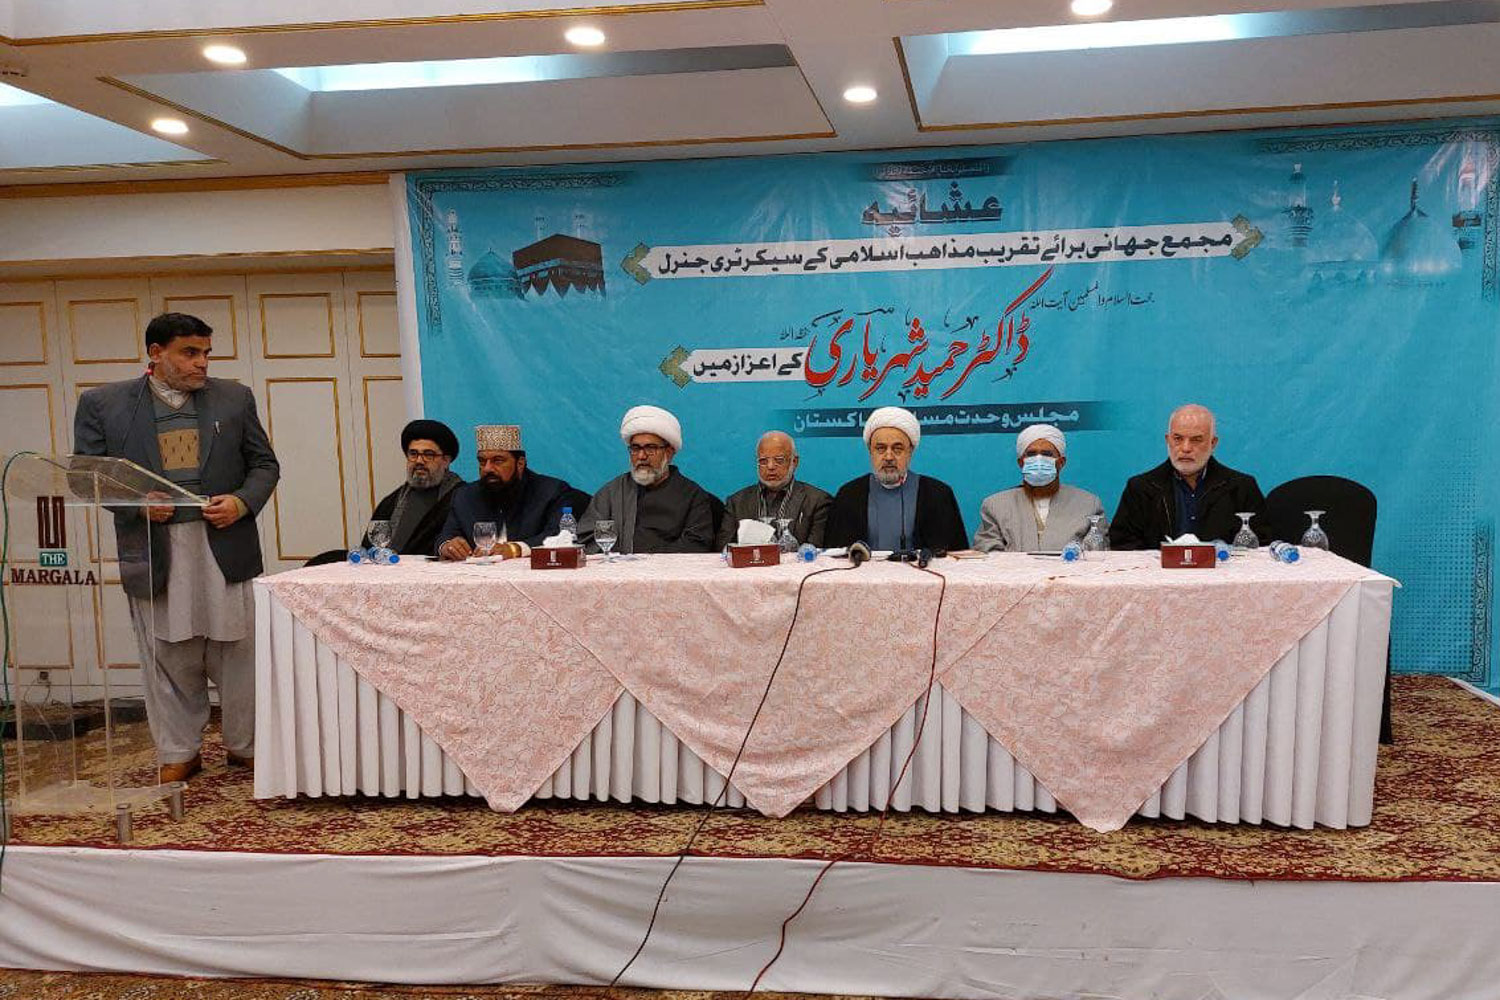 گردهمایی نخبگان دینی و رهبران مذهبی پاکستان با حضور دکتر شهریاری